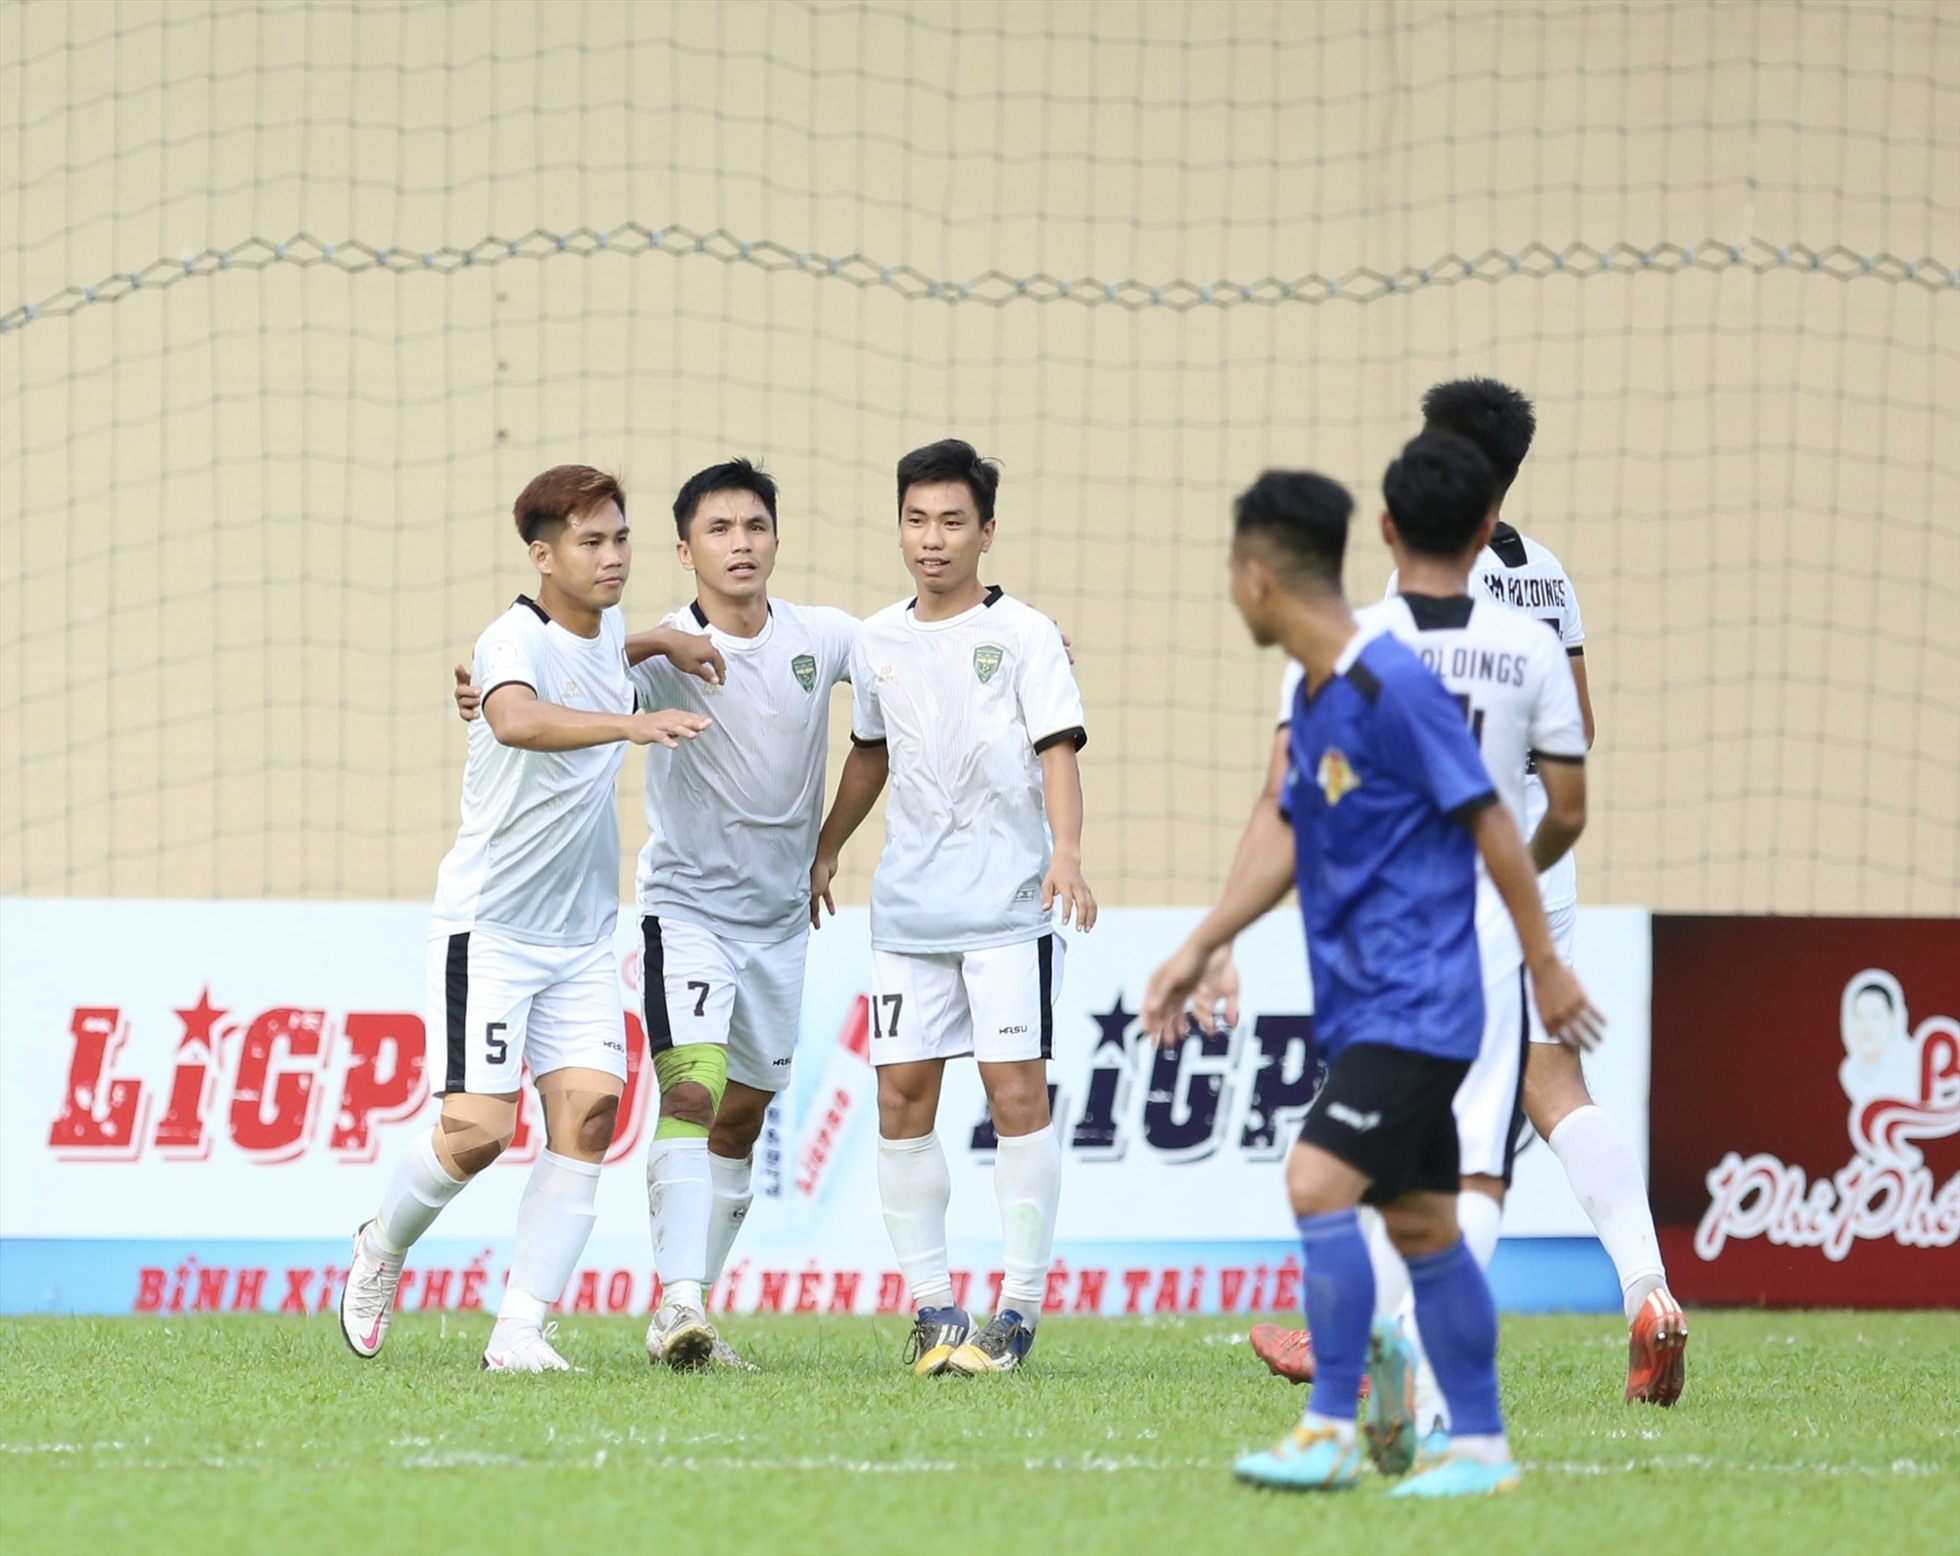 Cựu tuyển thủ quốc gia Nguyễn Thành Long Giang (số 5) là một trong số nhiều cựu tuyển thủ quốc gia thi đấu tại Cup Thiên Long 2022. Ảnh: Đ.V